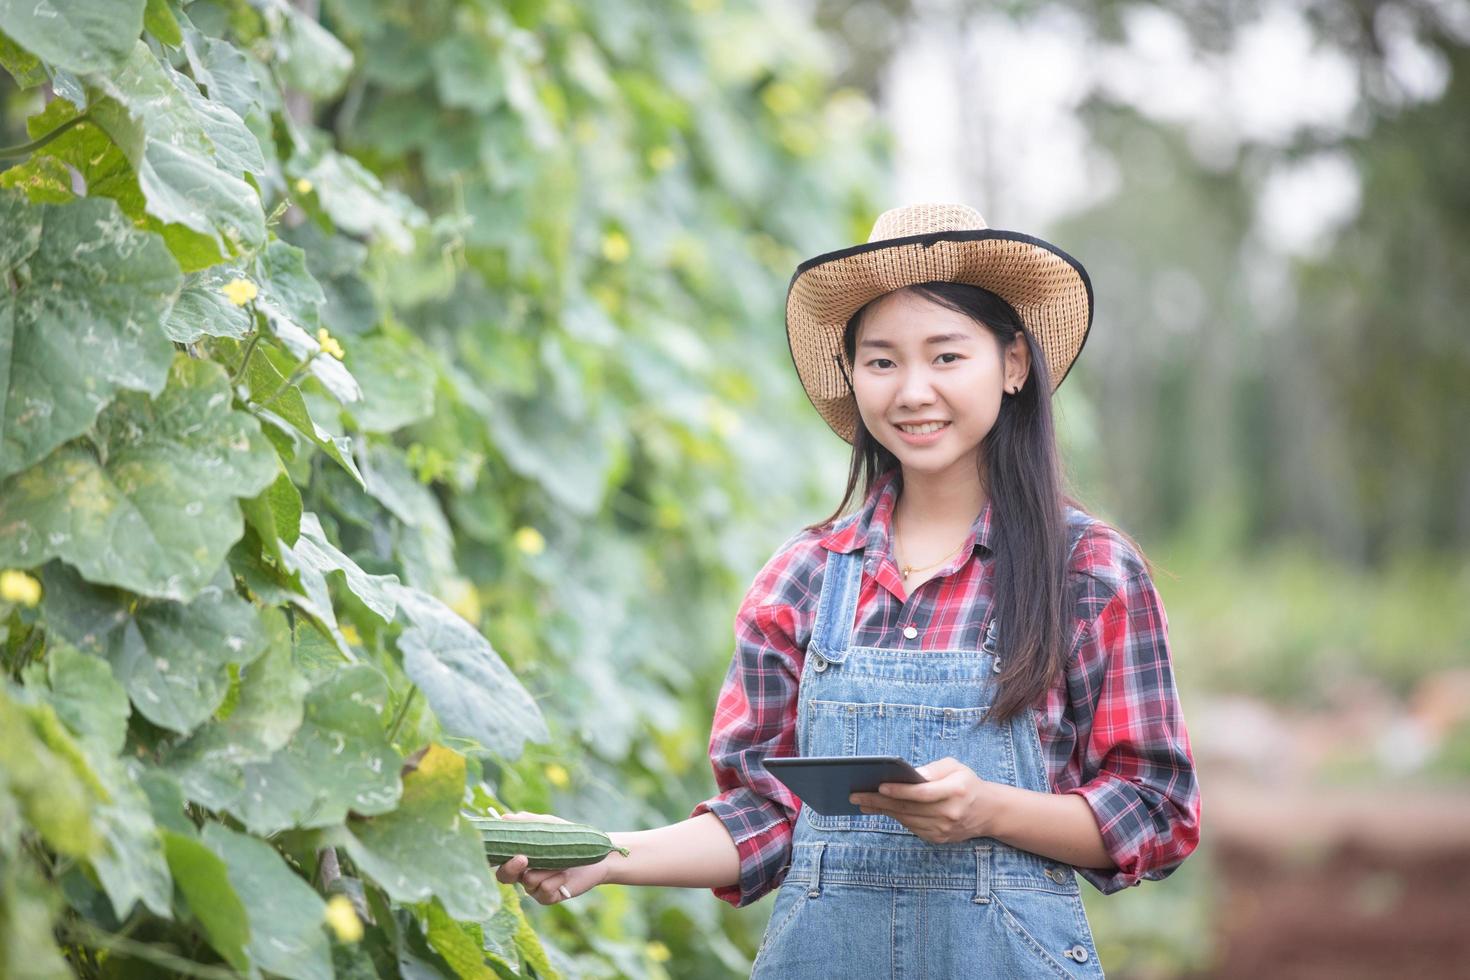 asiatisk kvinnlig agronom och bonde som använder teknik för inspektion i jordbruks- och ekologiska grönsaksfält foto